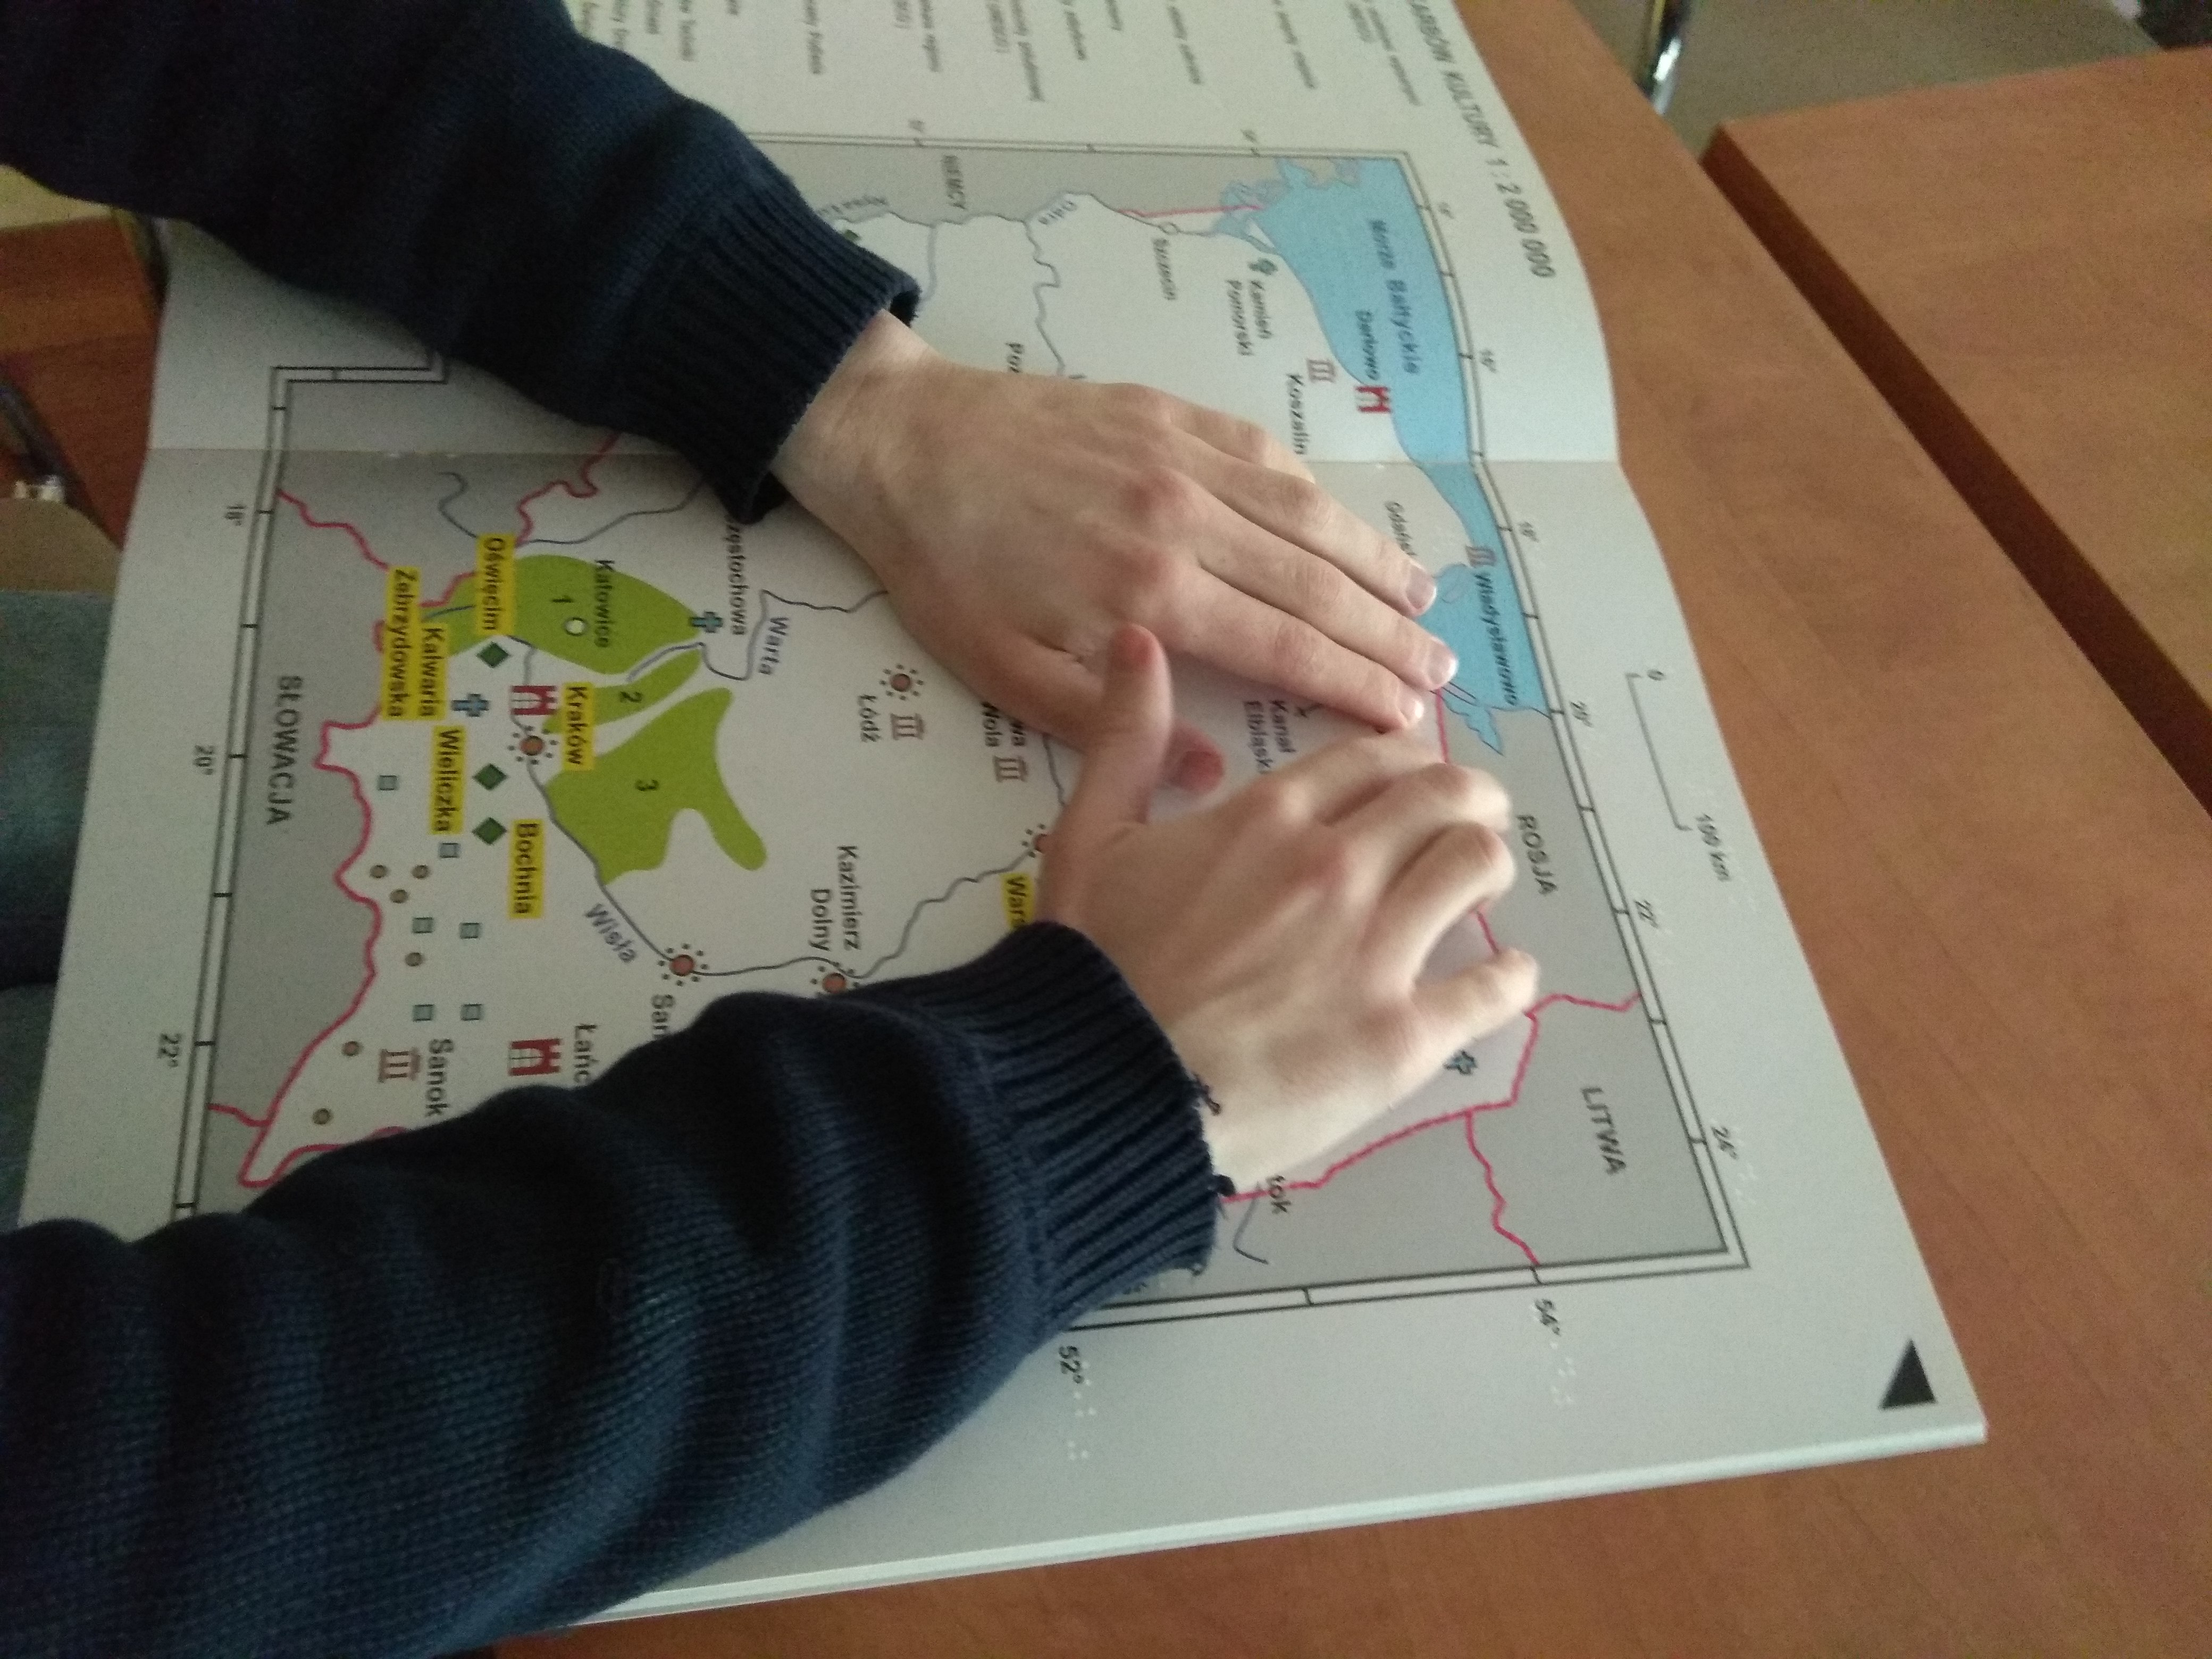 Dłonie uczestnika w czarnych rękawach podczas czytania dotykiem tyflomapy Polski z publikacji Bliżej Skarbów Kultury